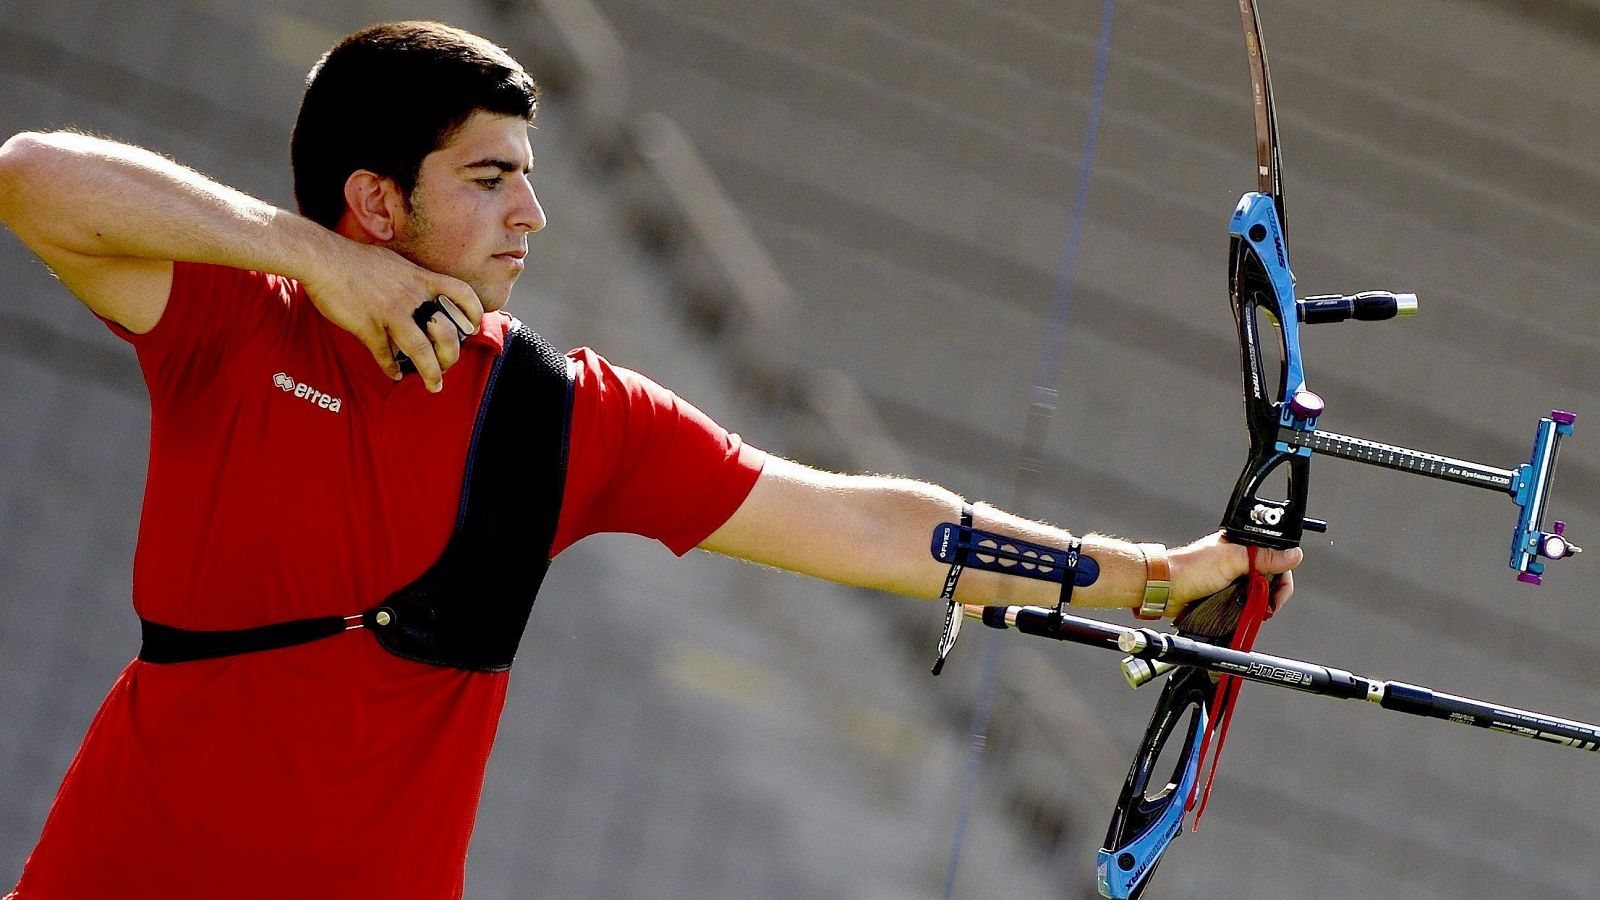 El tirador con arco español Miguel Alvariño, oro individual en los Juegos Europeos de Bakú